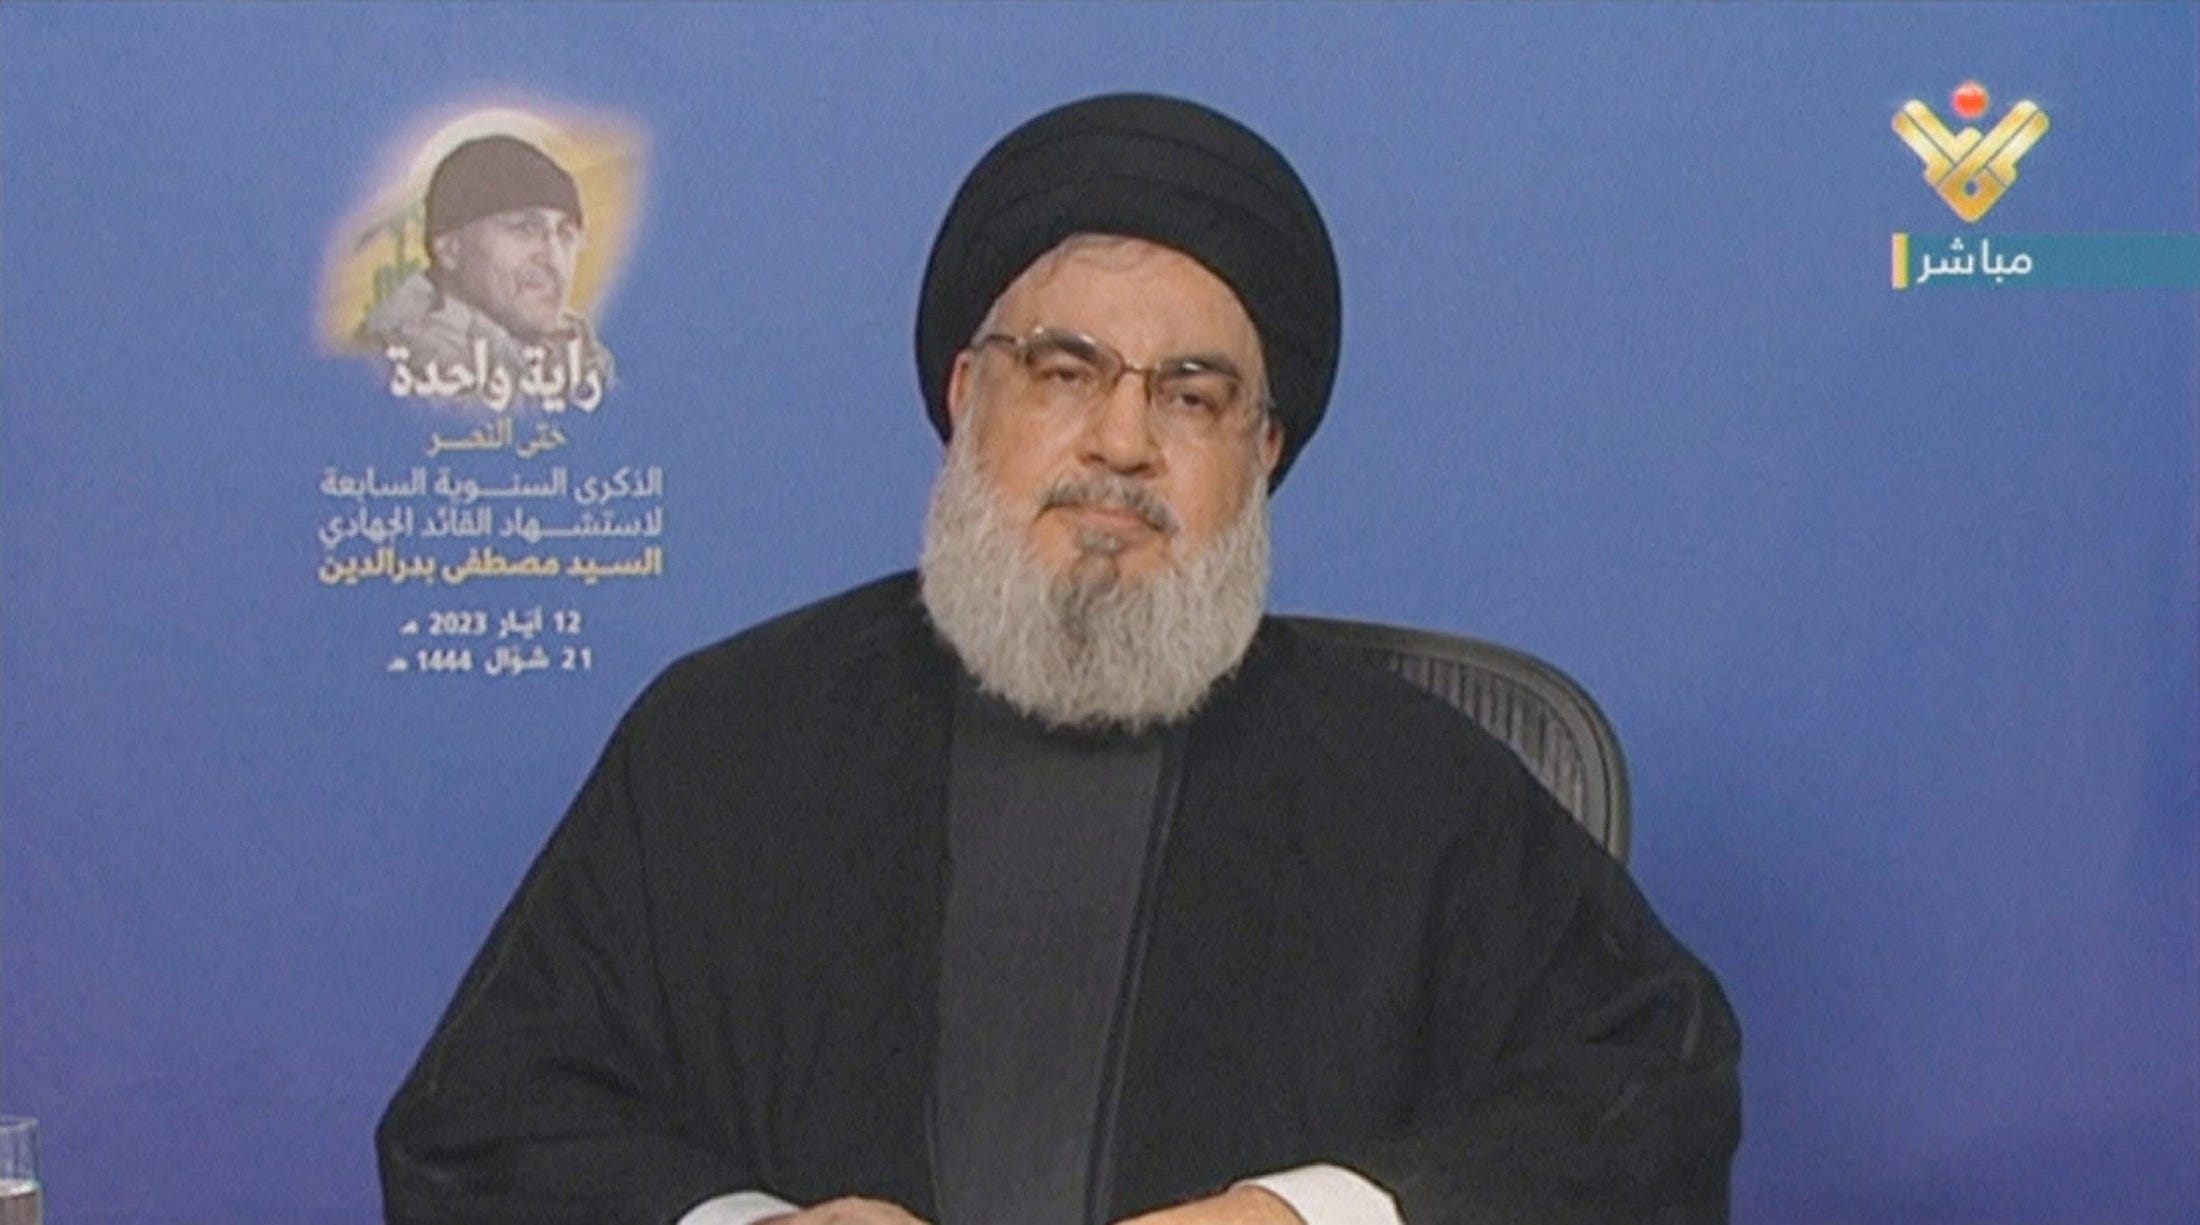 Хасан насралла. Лидер ливанского шиитского движения «Хезболла» Хасан Насралла. Мухаммад Хади Насралла. Хезболла спецназ.